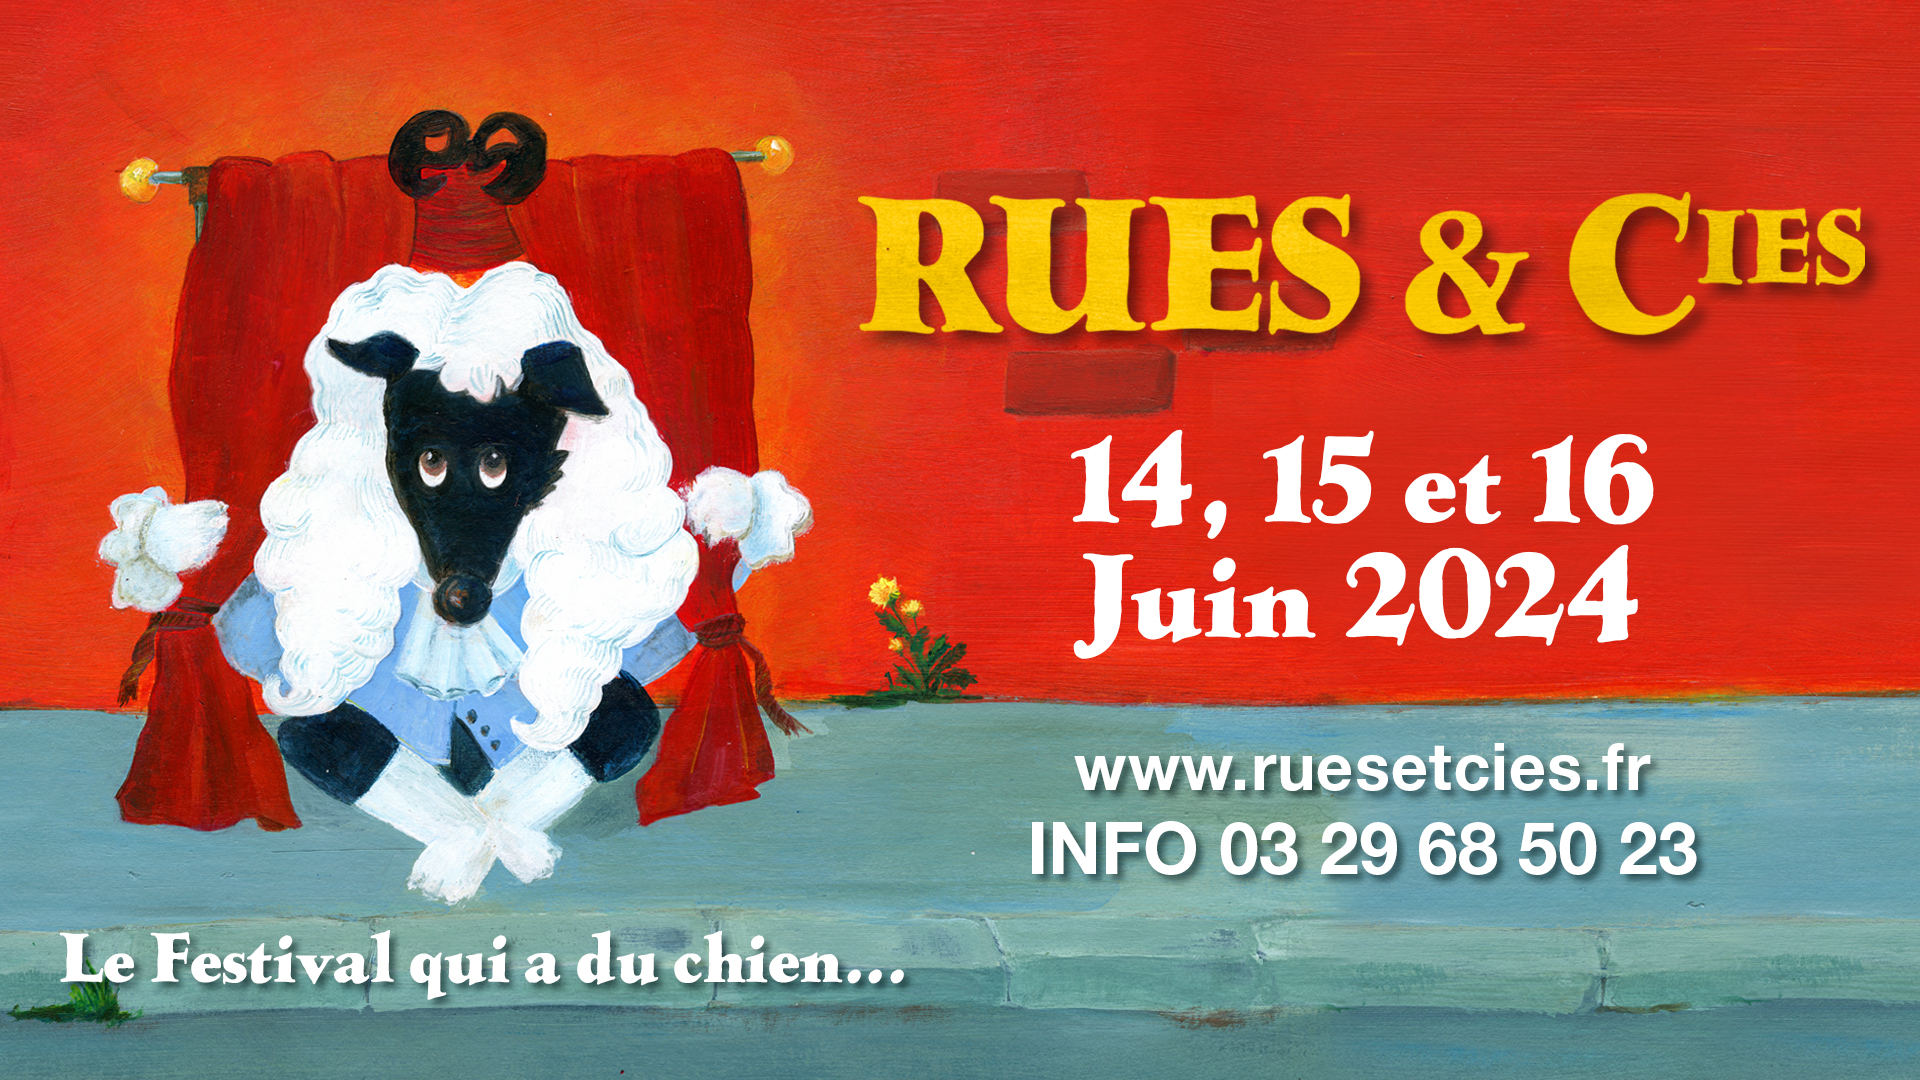 Rues & Cies : le festival fête ses 40 ans du 14 au 16 juin !